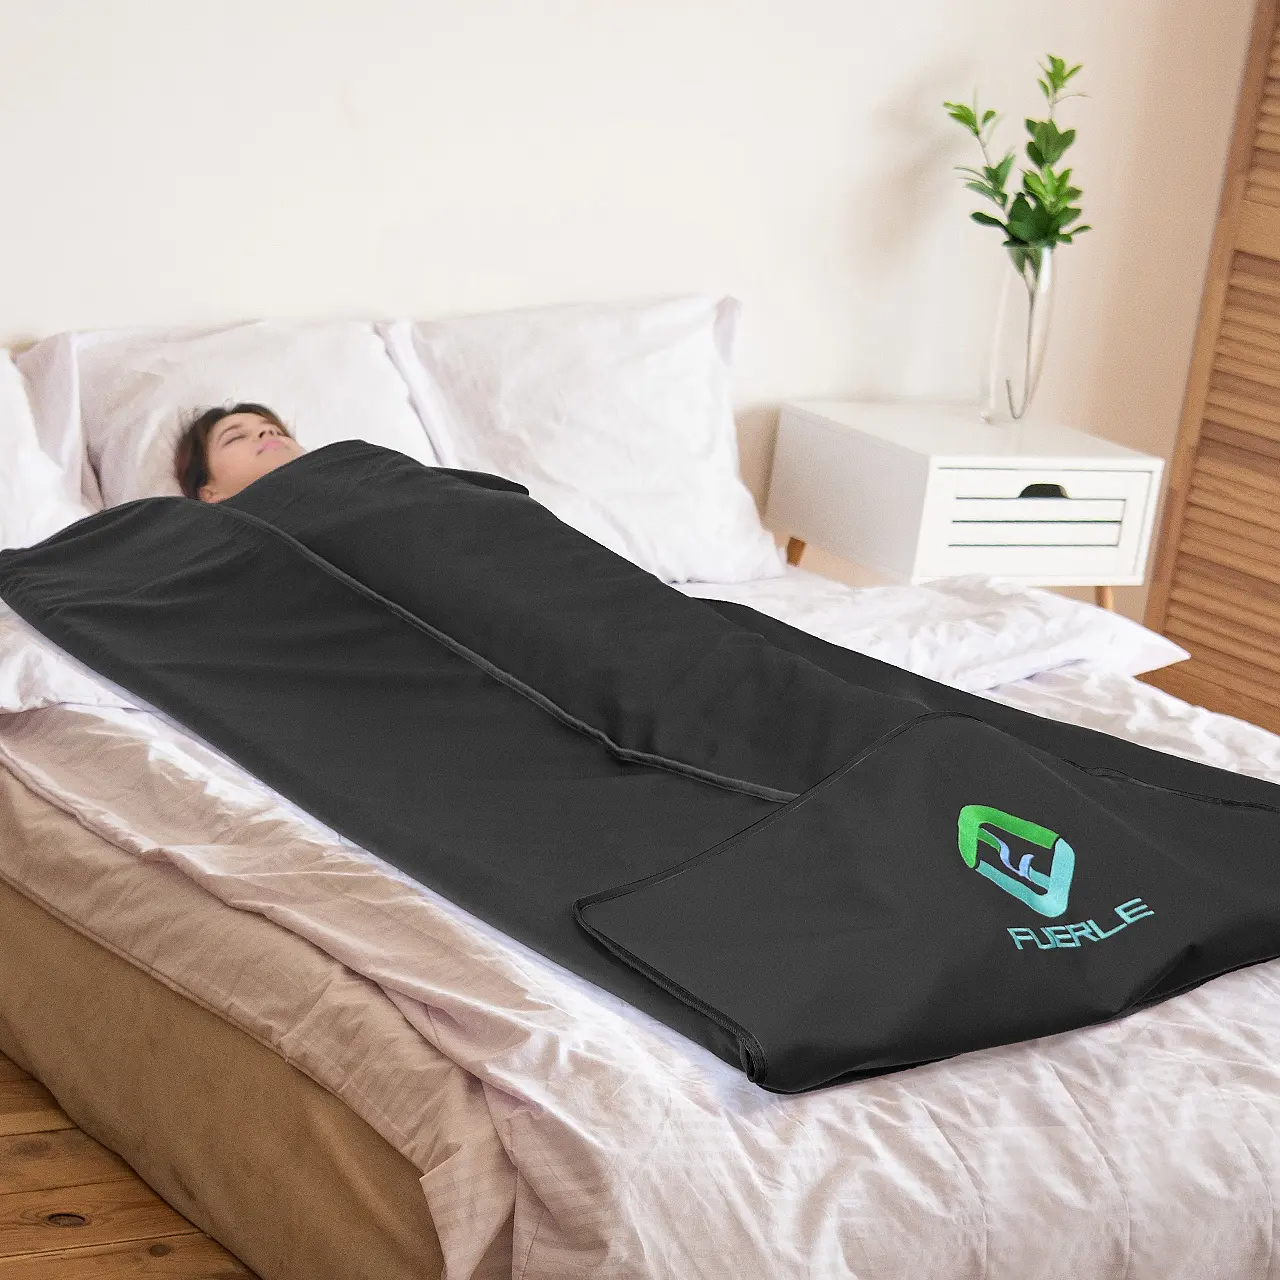 OEM/ODM portatile impermeabile sauna coperta cosmetici riscaldamento coperta a infrarossi per la perdita di peso e la disintossicazione